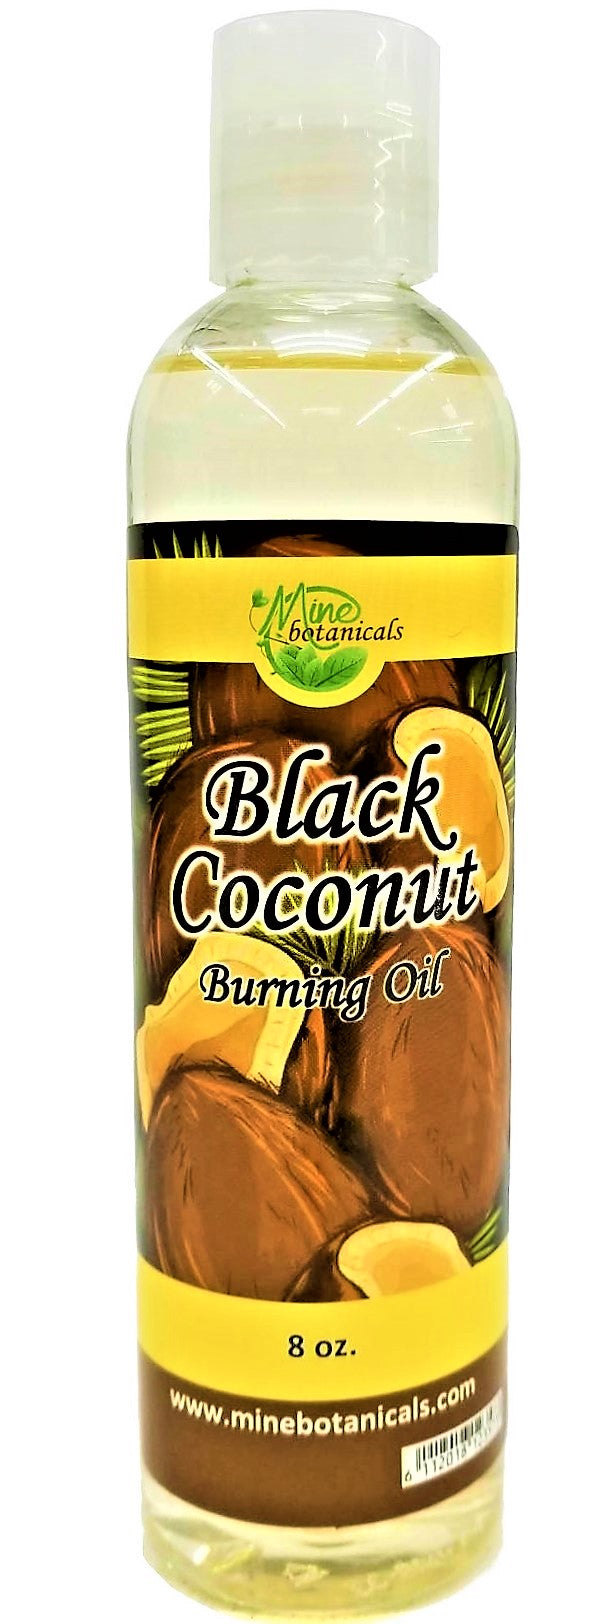 Black Coconut Burning Oil